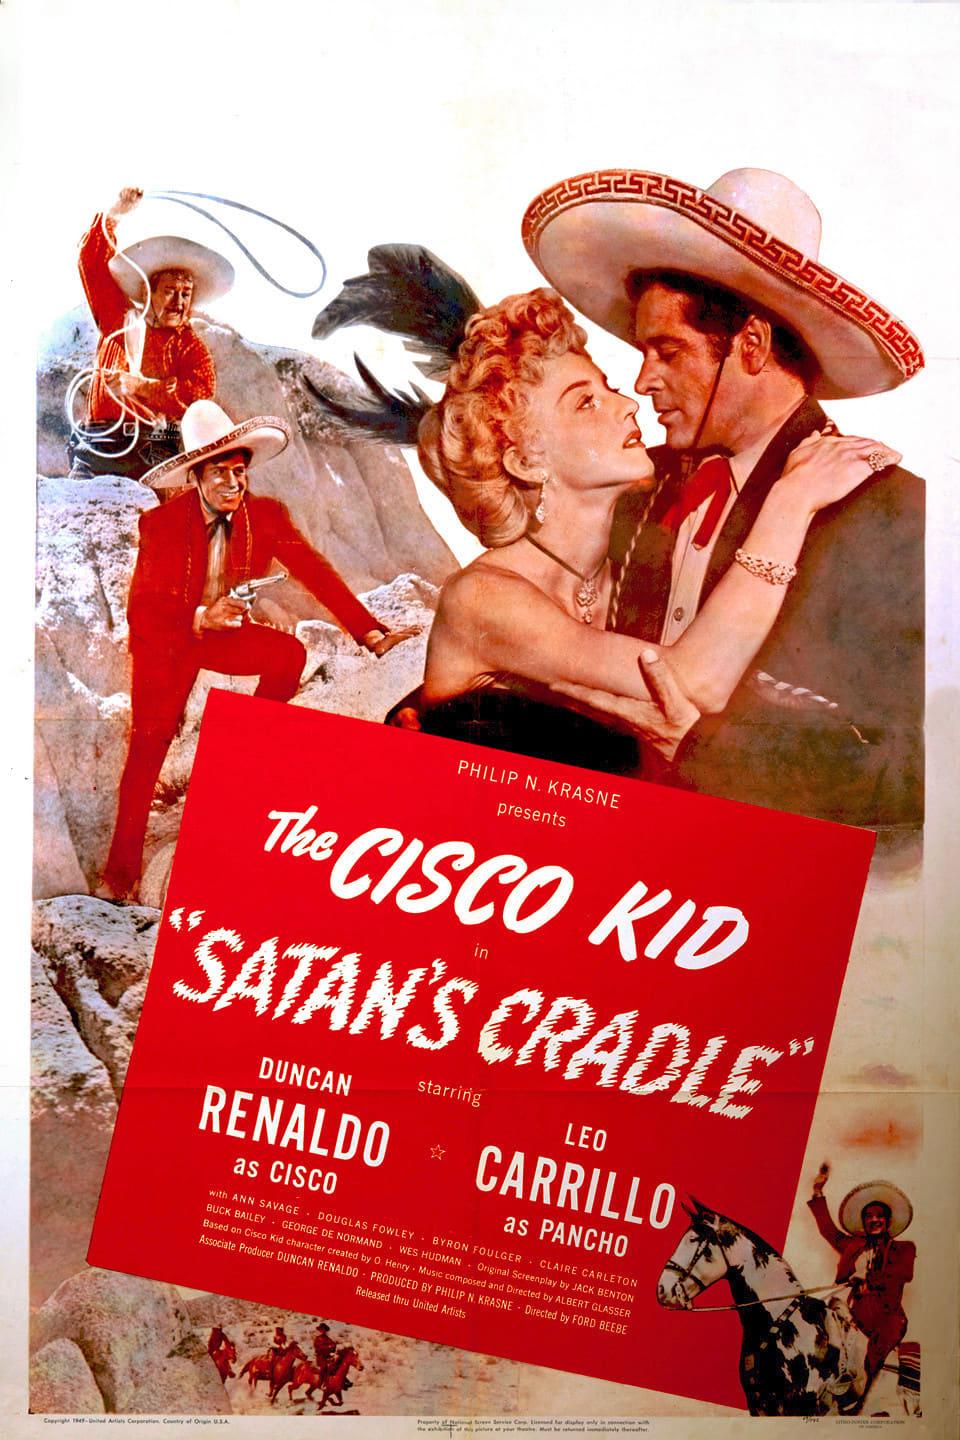 Satan's Cradle poster